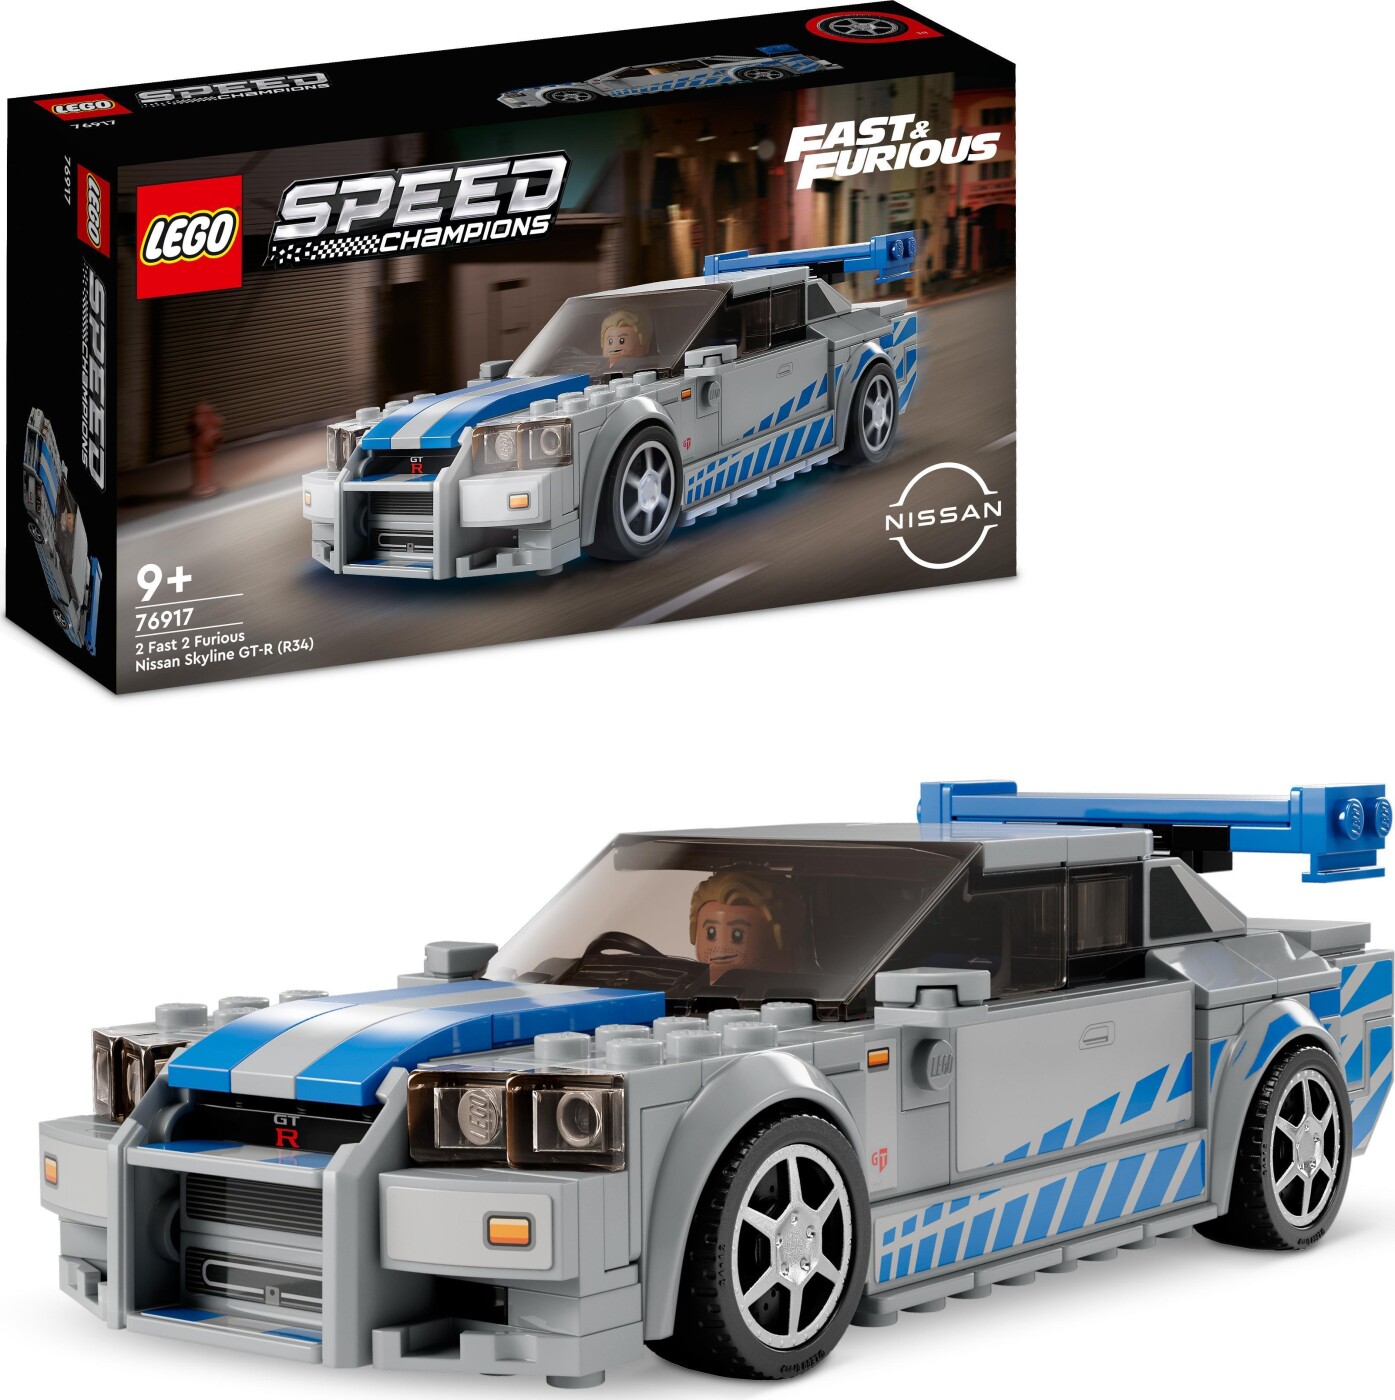 Billede af Lego Speed Champions - 2 Fast 2 Furious Nissan Skyline - 76917